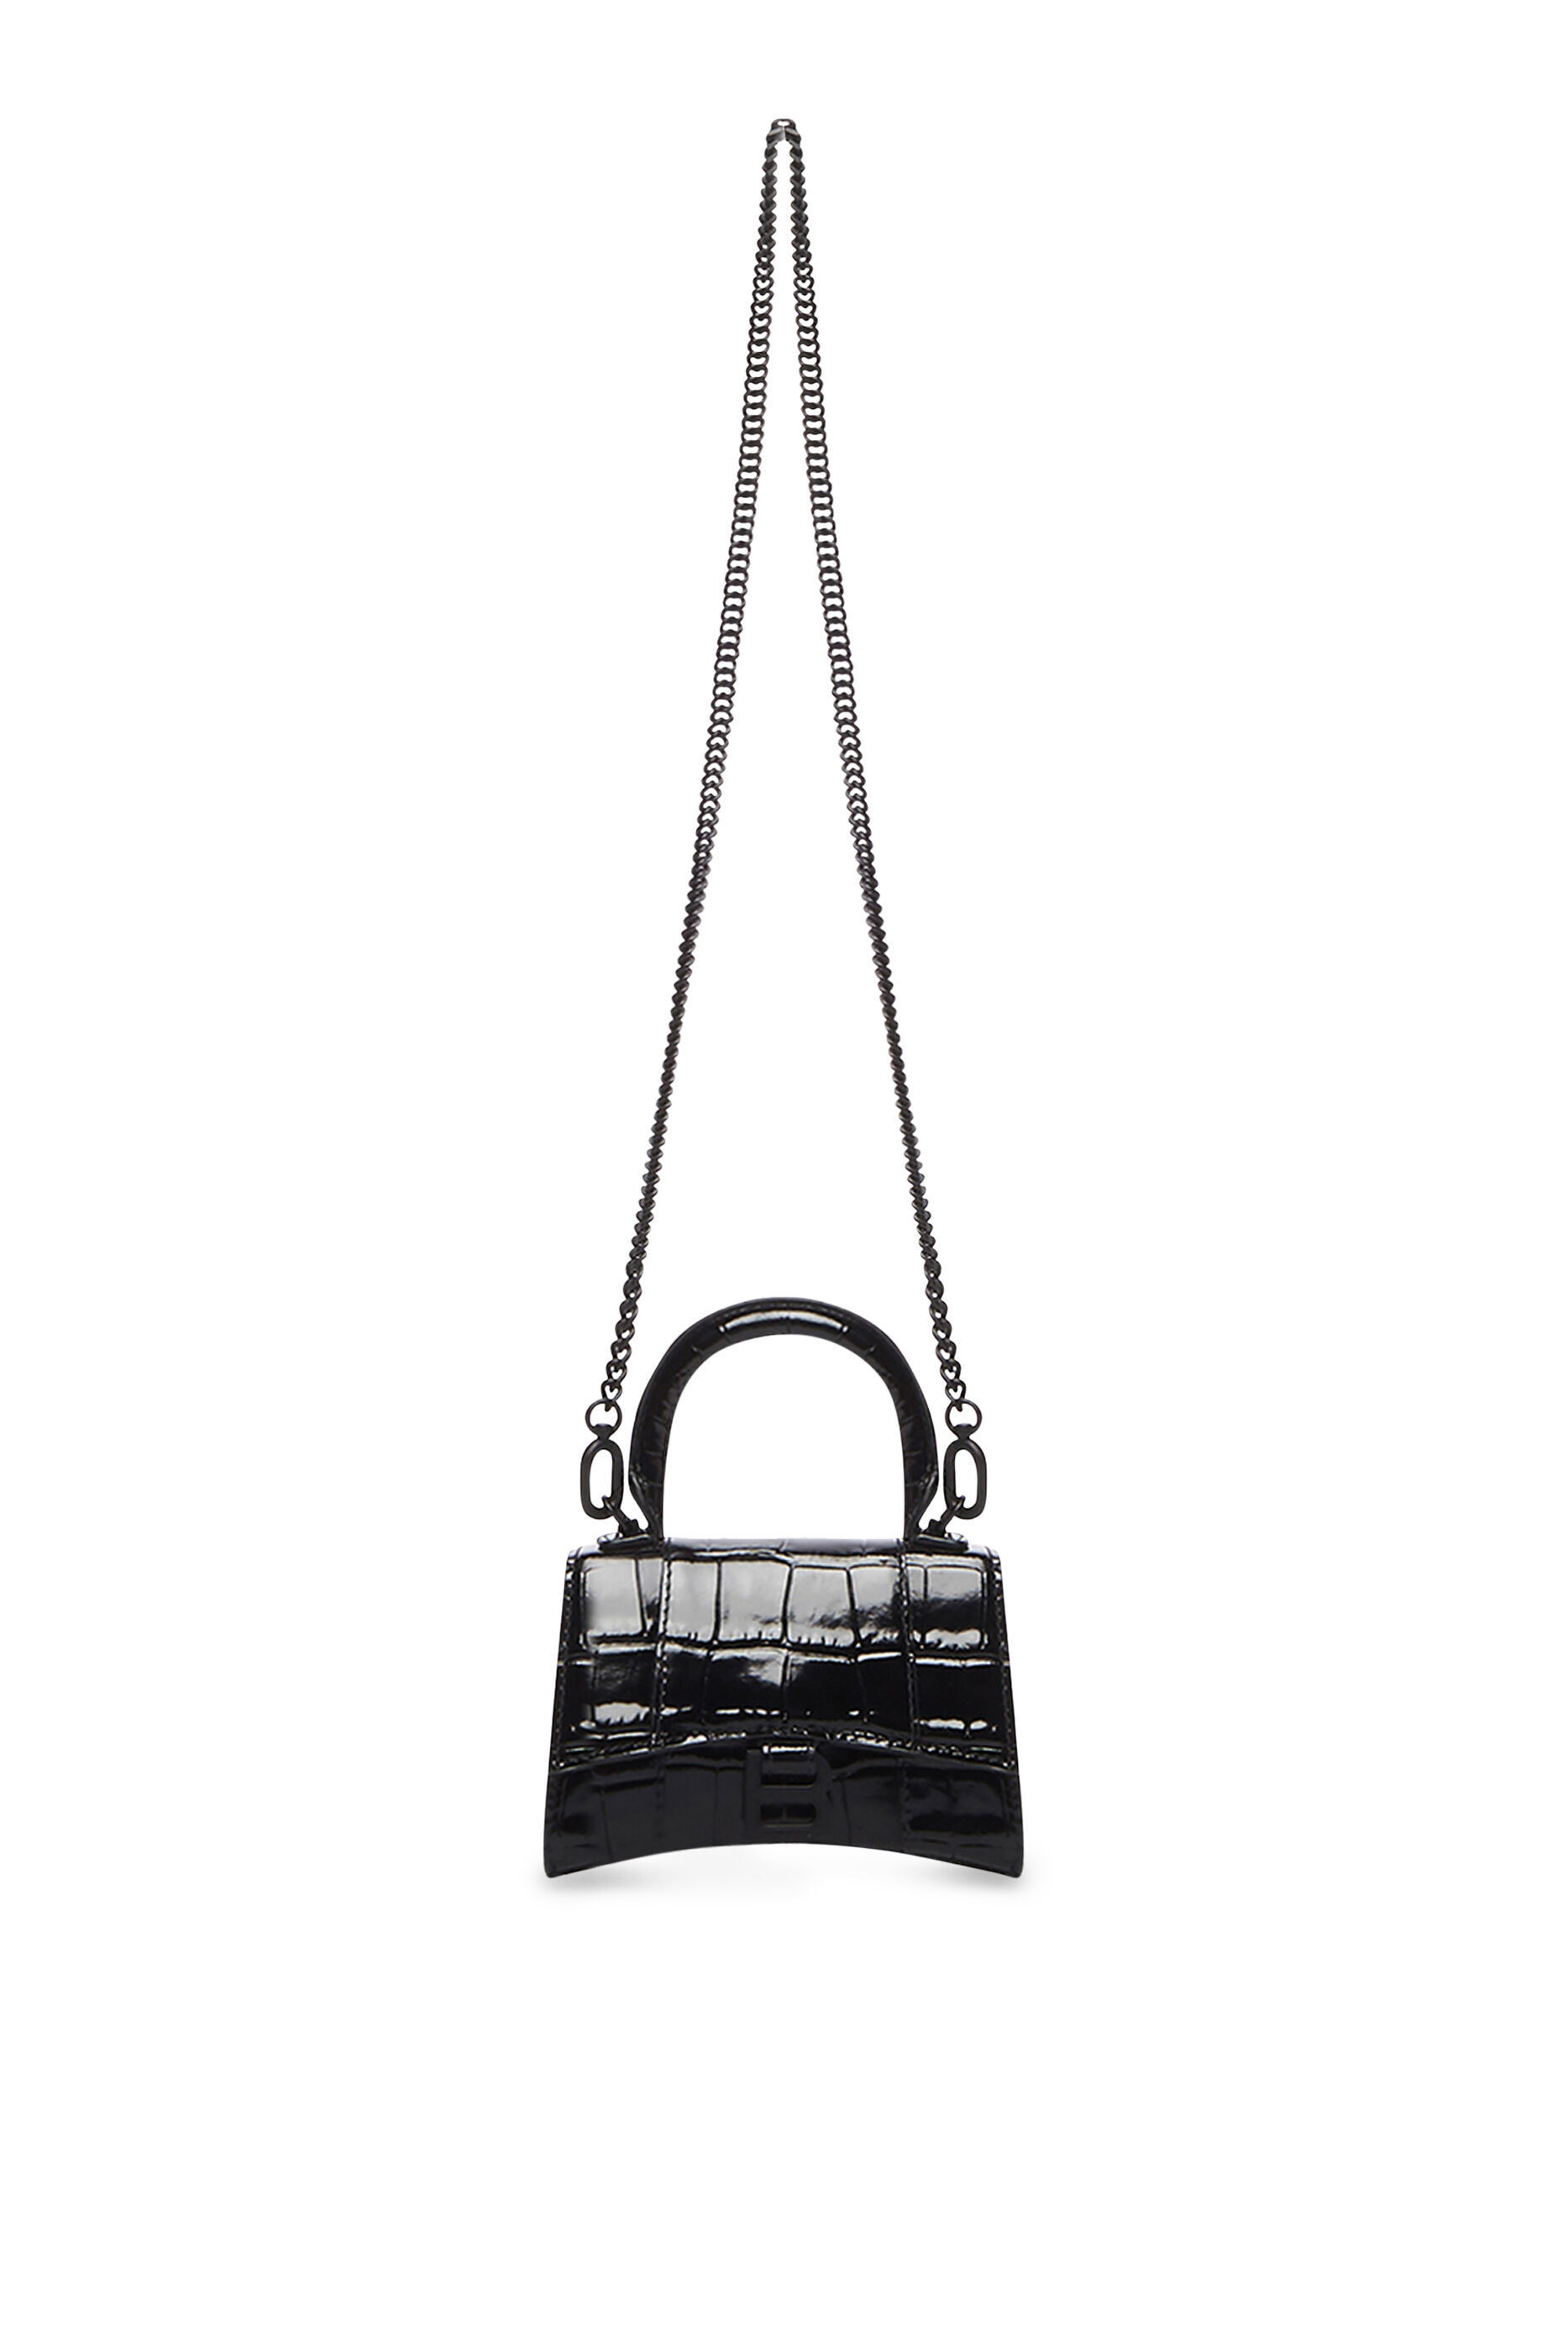 Balenciaga Black Micro Backpack Keyring  SSENSE